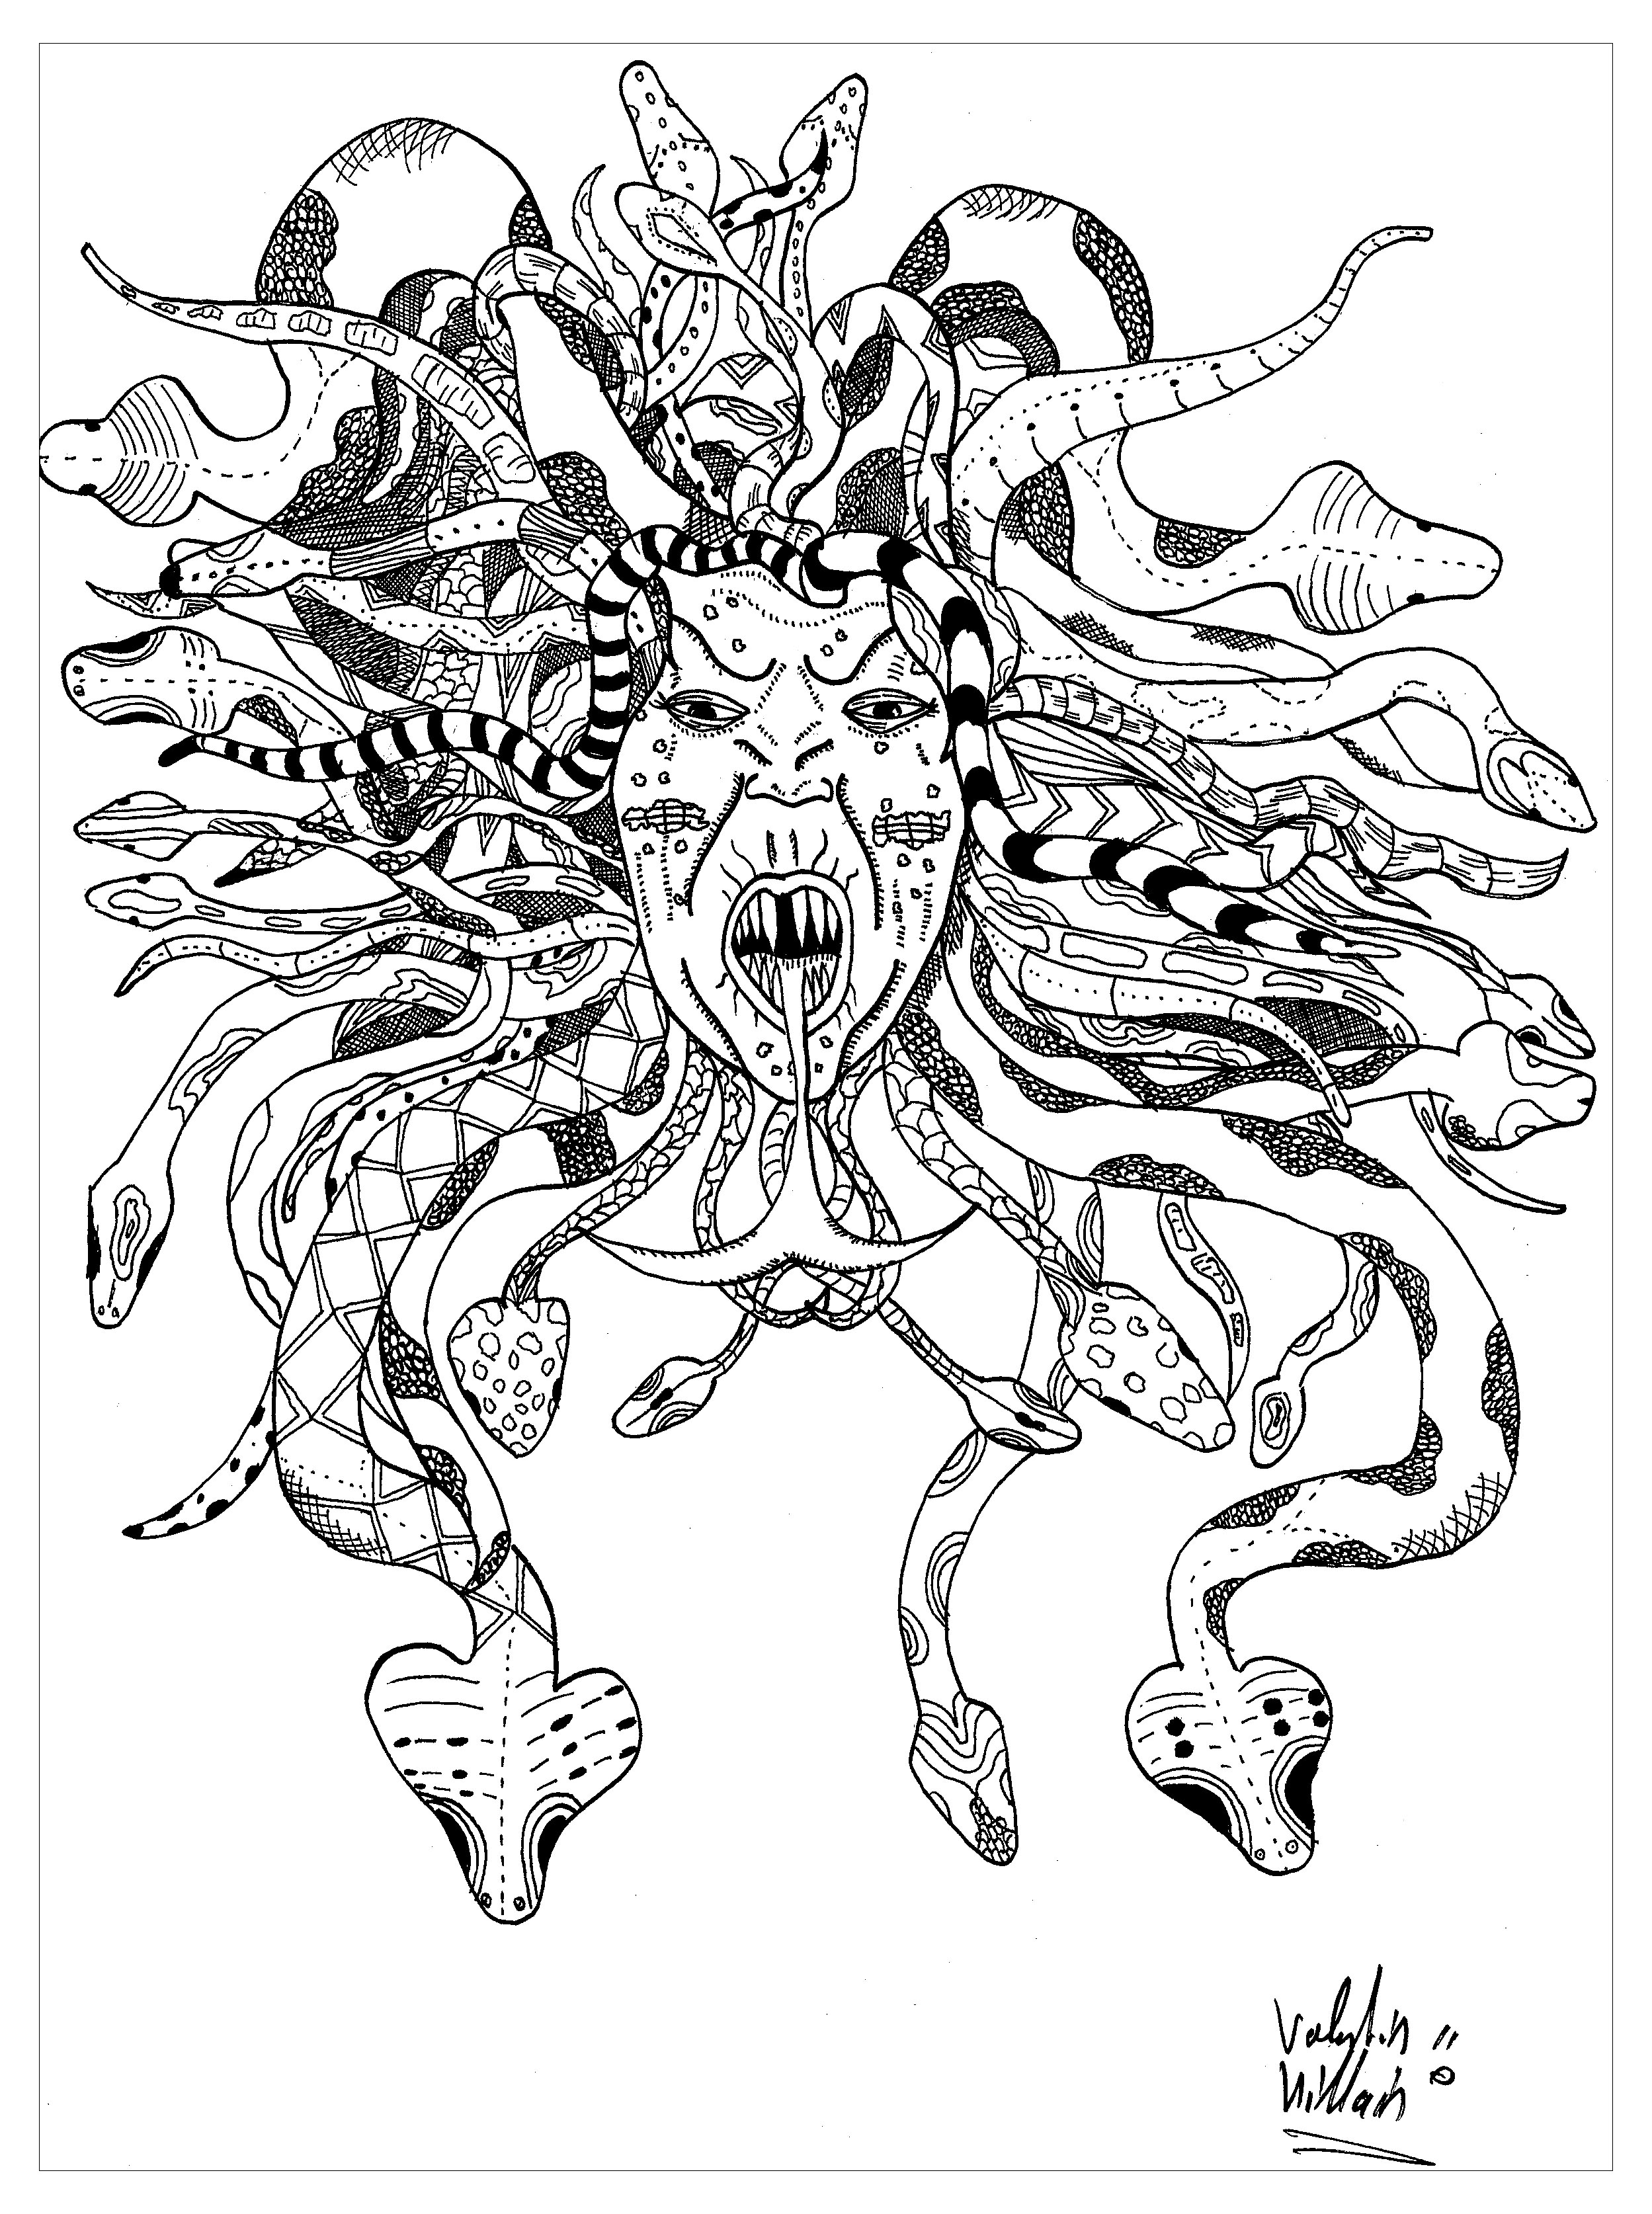 Färbung der Medusa. Hier ist eine prächtige Darstellung der mythischen Gorgone Medusa. Ihr Gesicht ist von einer Mähne umgeben, die mit Schlangen verflochten ist, was ihr ein furchterregendes Aussehen verleiht, Künstler : Valentin